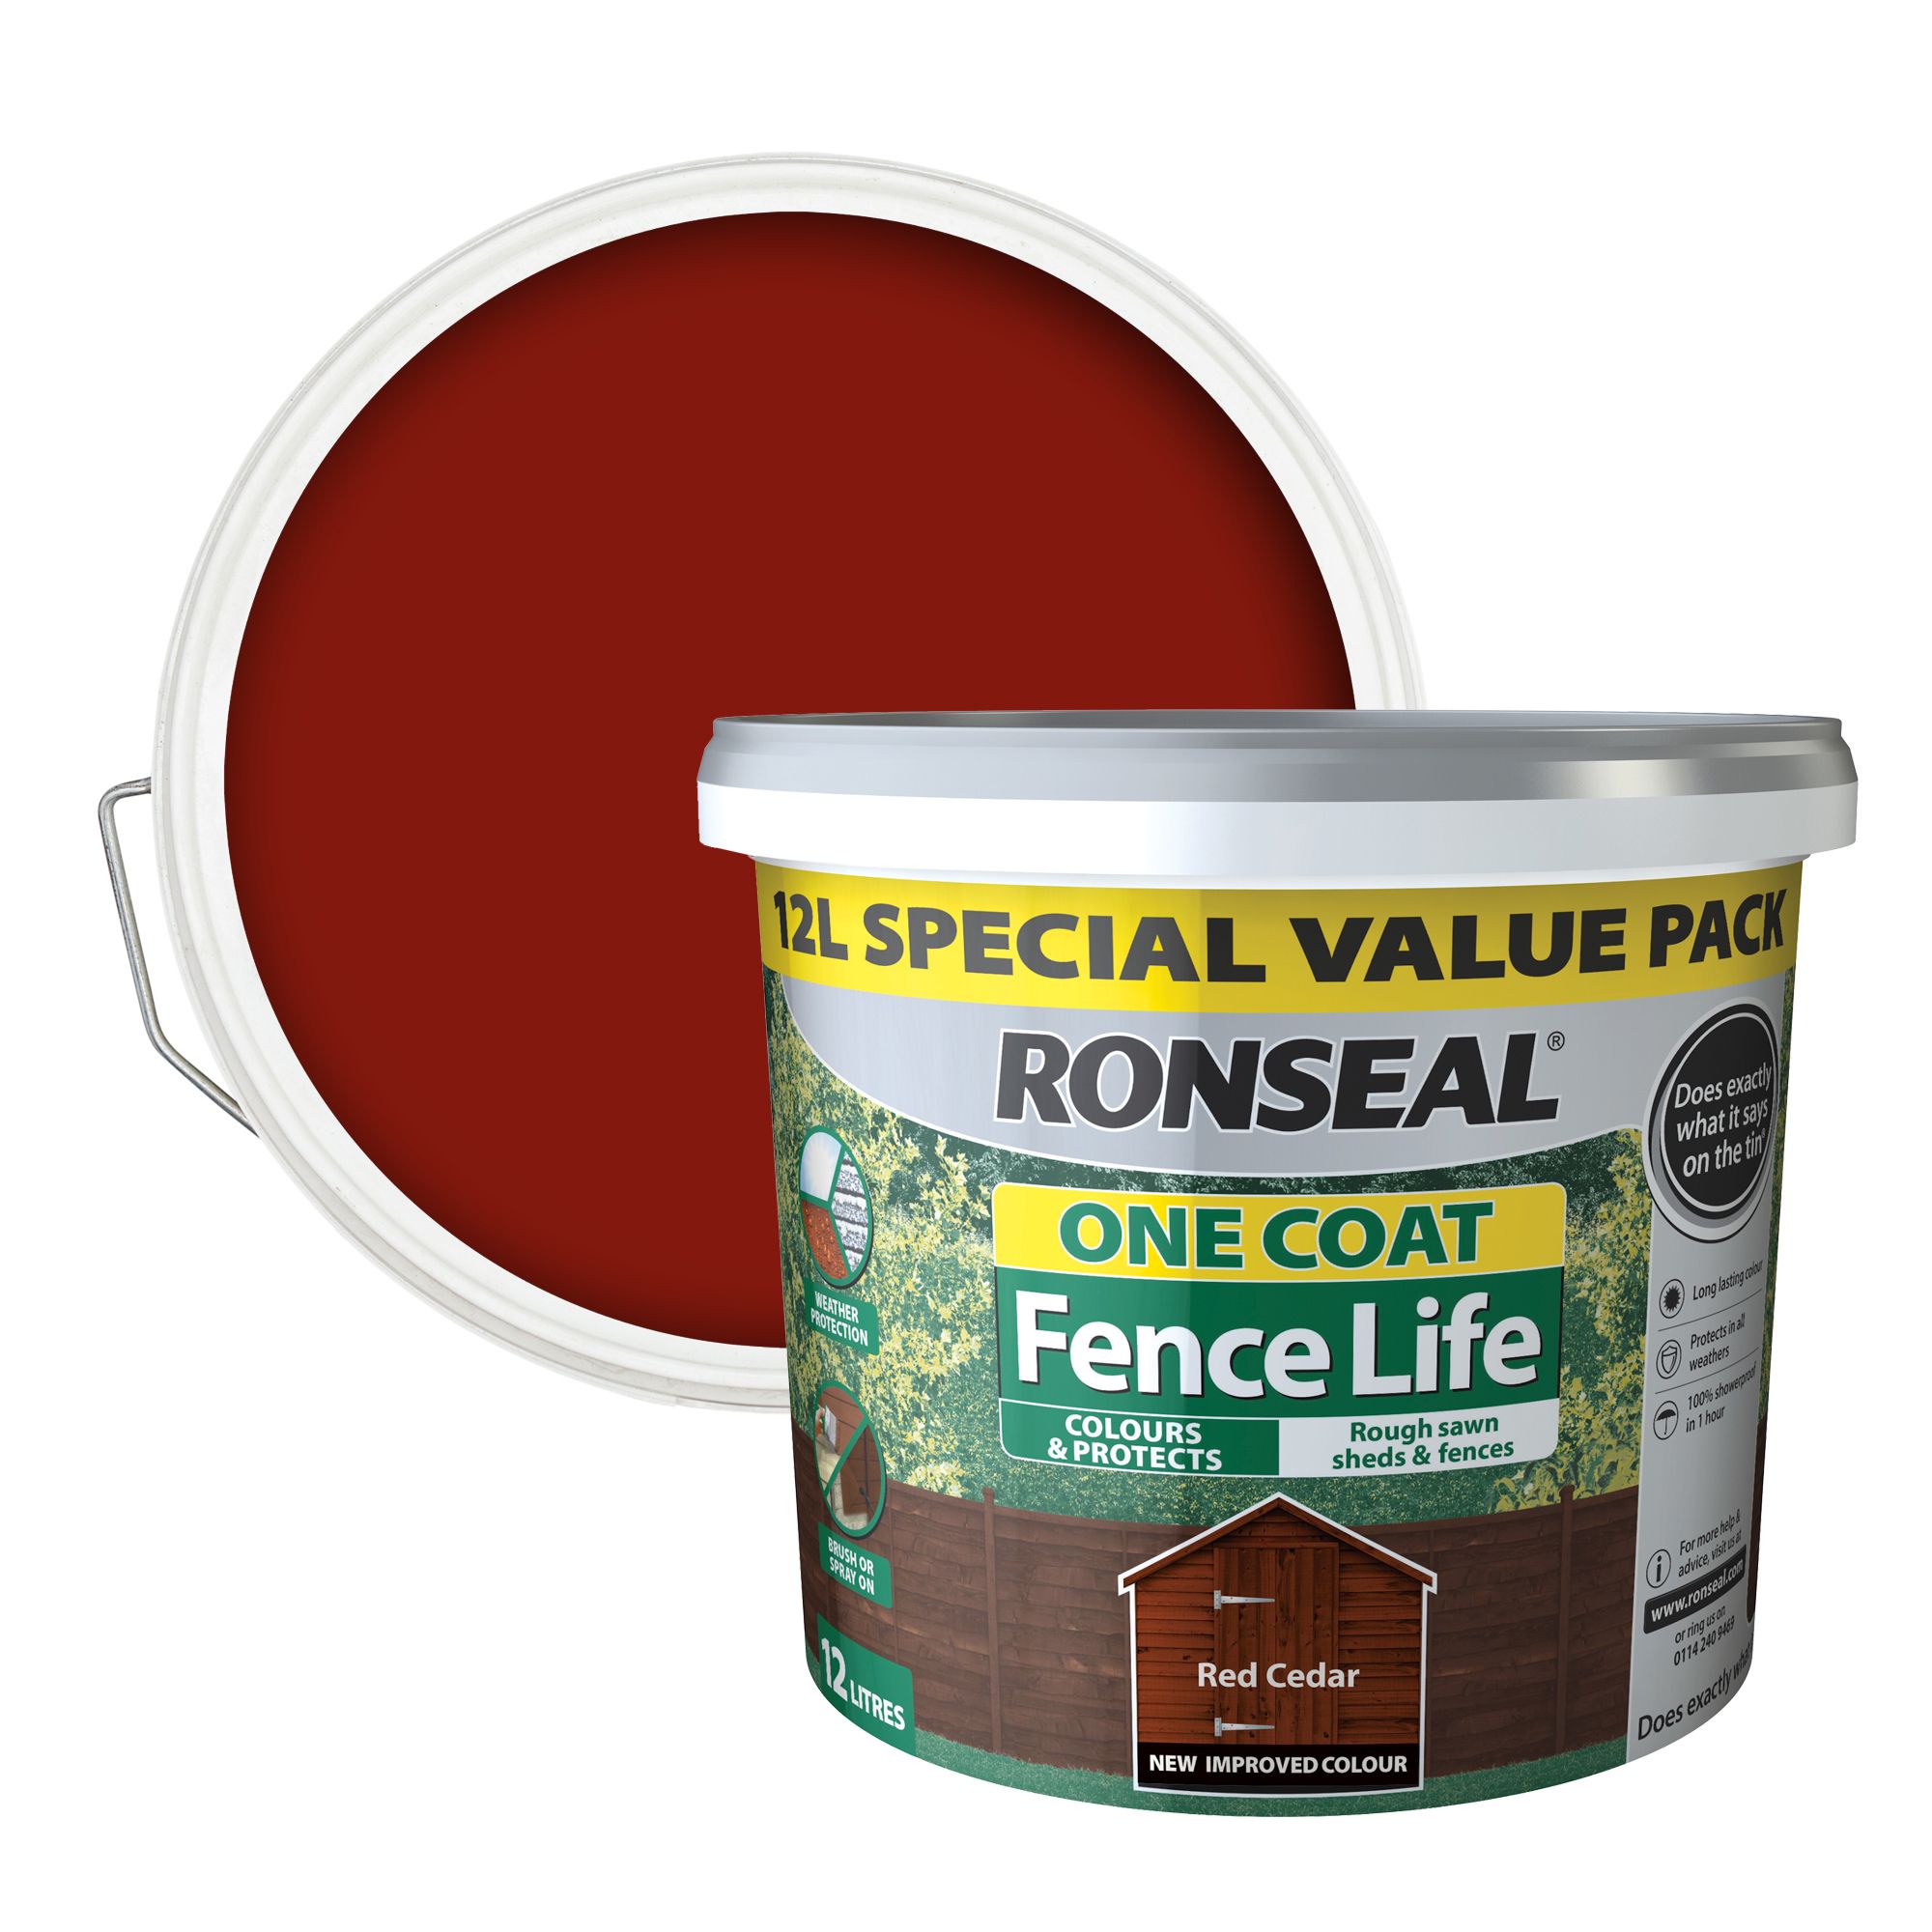 Ronseal One Coat Fence Life Red cedar Matt Exterior Wood paint, 12L Tub